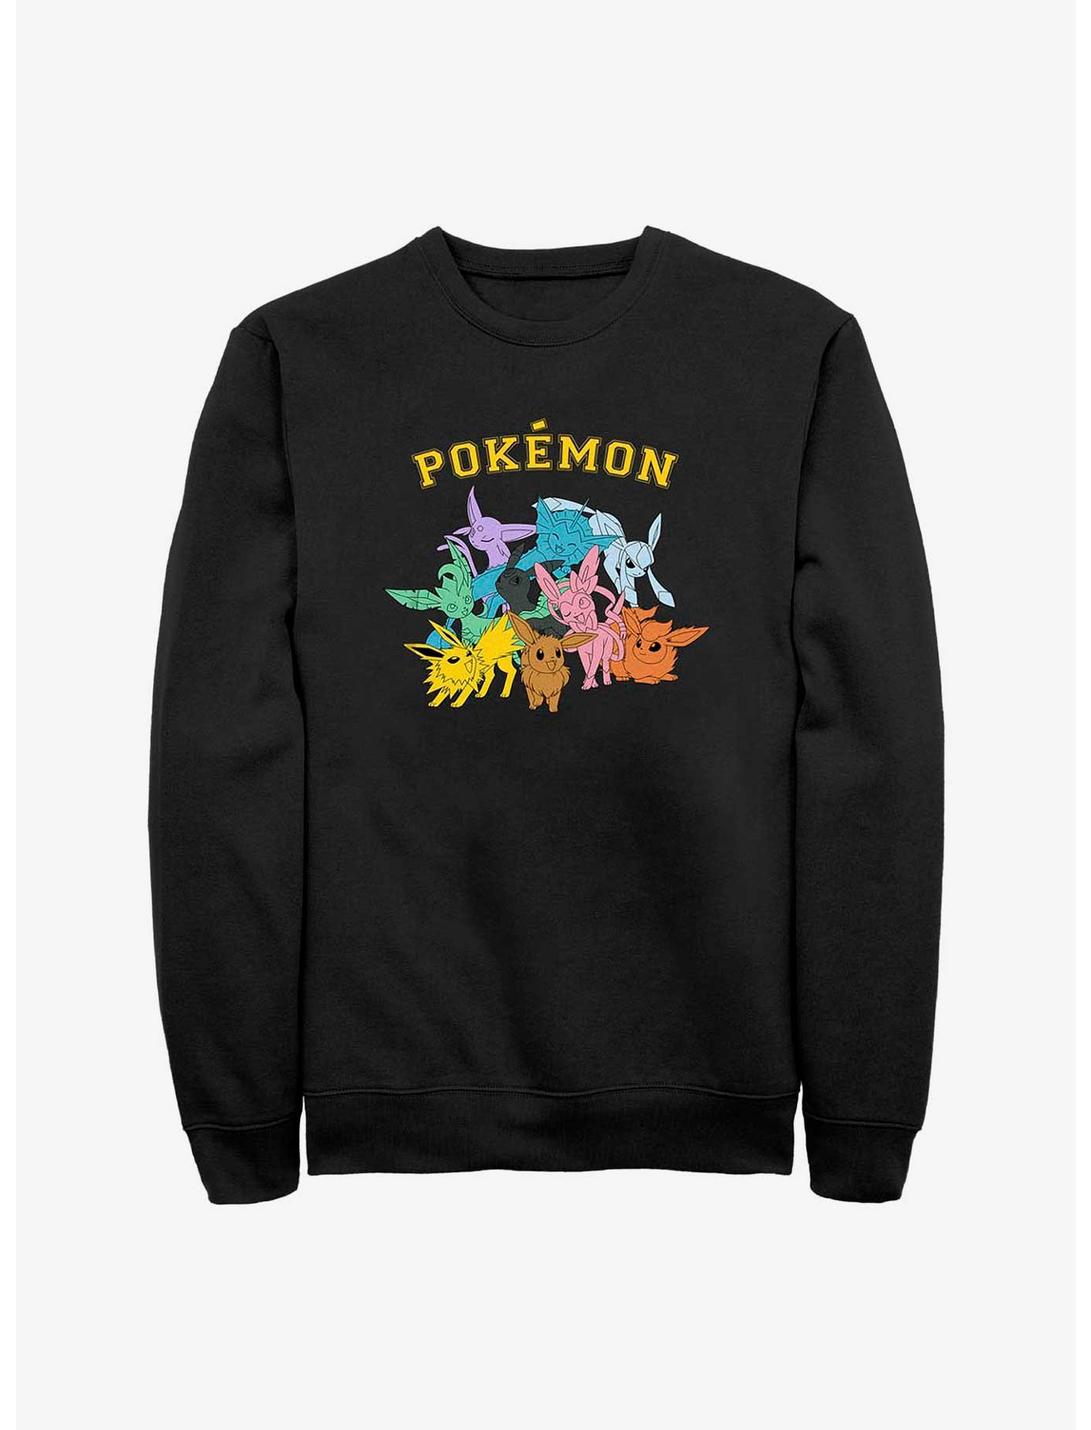 Pokemon Eeveelutions Sweatshirt, BLACK, hi-res